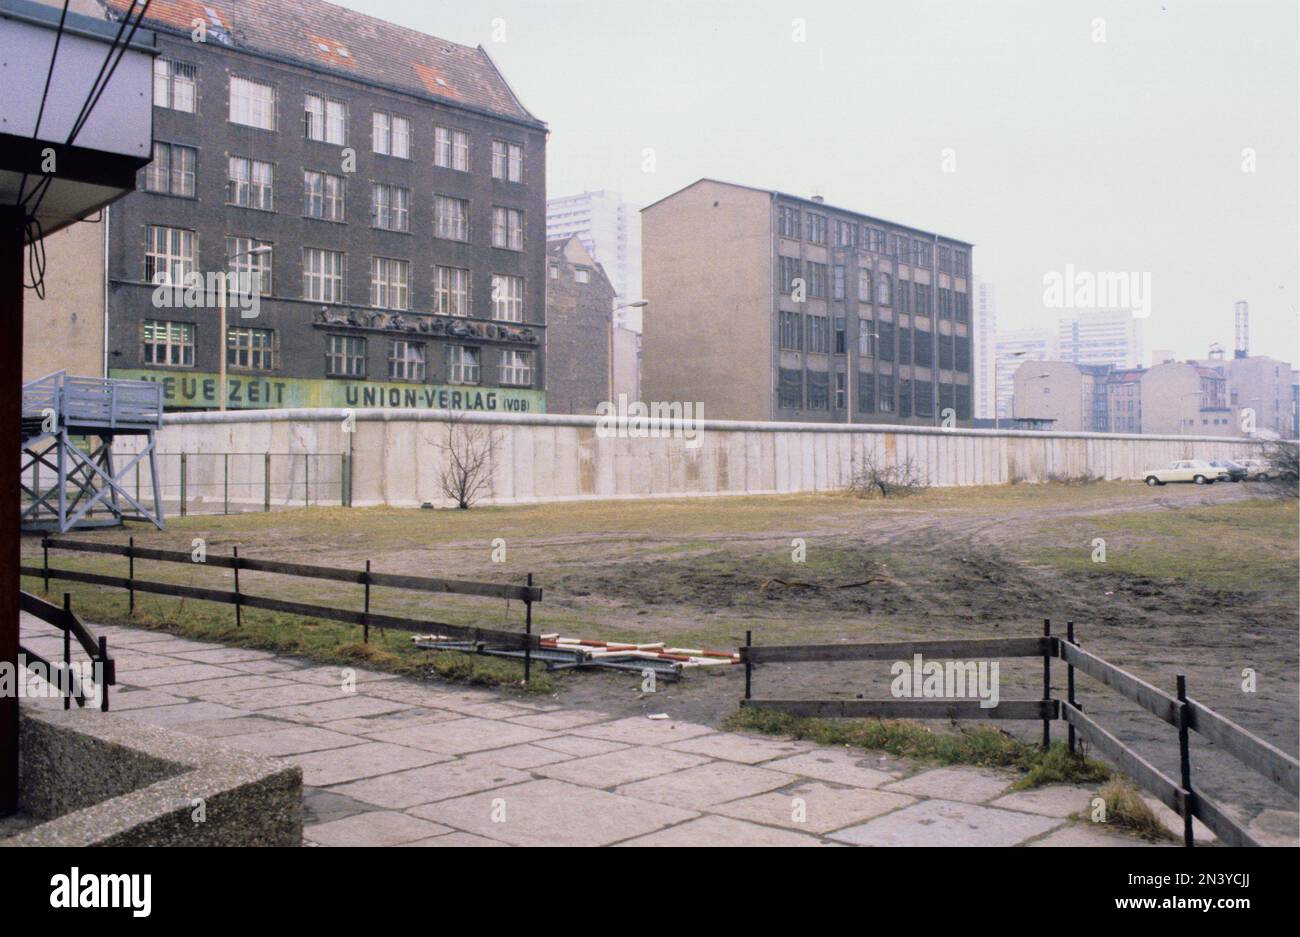 Le mur de Berlin. Une barrière en béton protégée qui a encerclé Berlin Ouest de 1961 à 1989, la séparant de Berlin est et de l'Allemagne de l'est. La construction du mur de Berlin a commencé en 1961. Berlin Ouest était une enclave politique qui comprenait la partie ouest de Berlin pendant les années de la guerre froide. Photo prise 1978 du mur de Berlin et de ses éléments de construction en béton. Banque D'Images